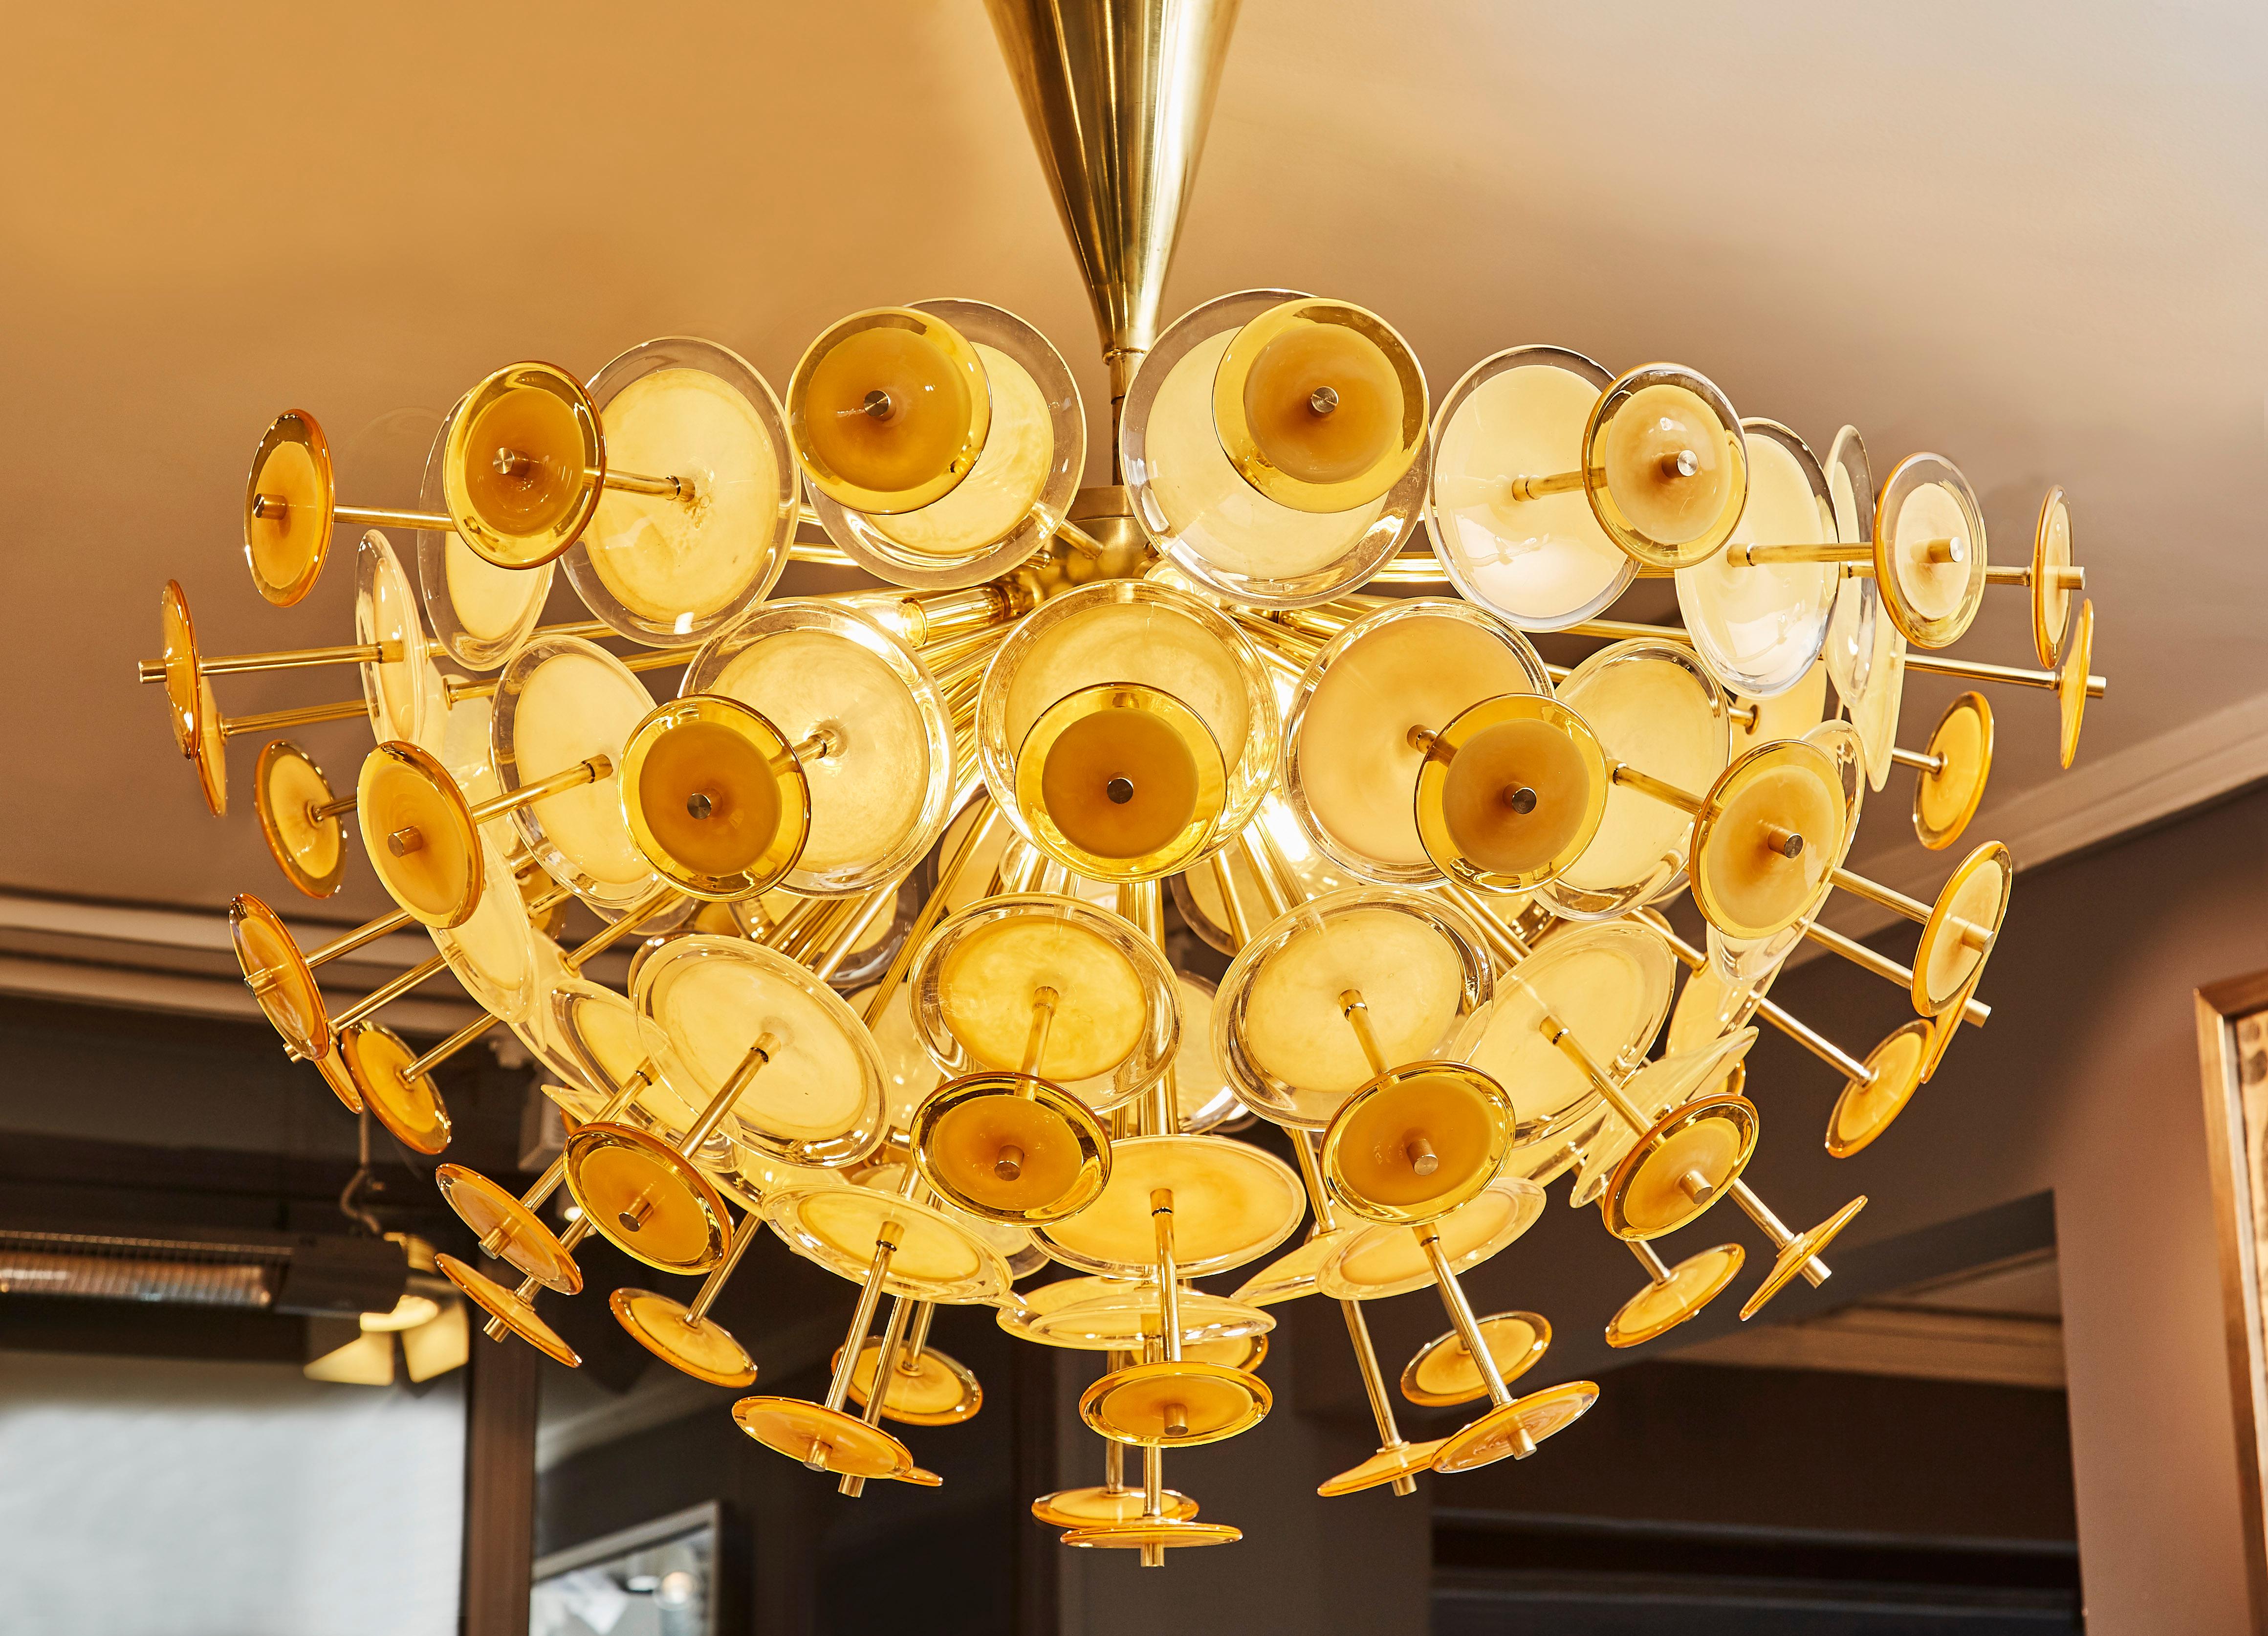 Elégant lustre demi-Sputnik en laiton avec des verres de Murano teintés d'ambre. Création unique du Studio Glustin, Italie, 2019.
 
 